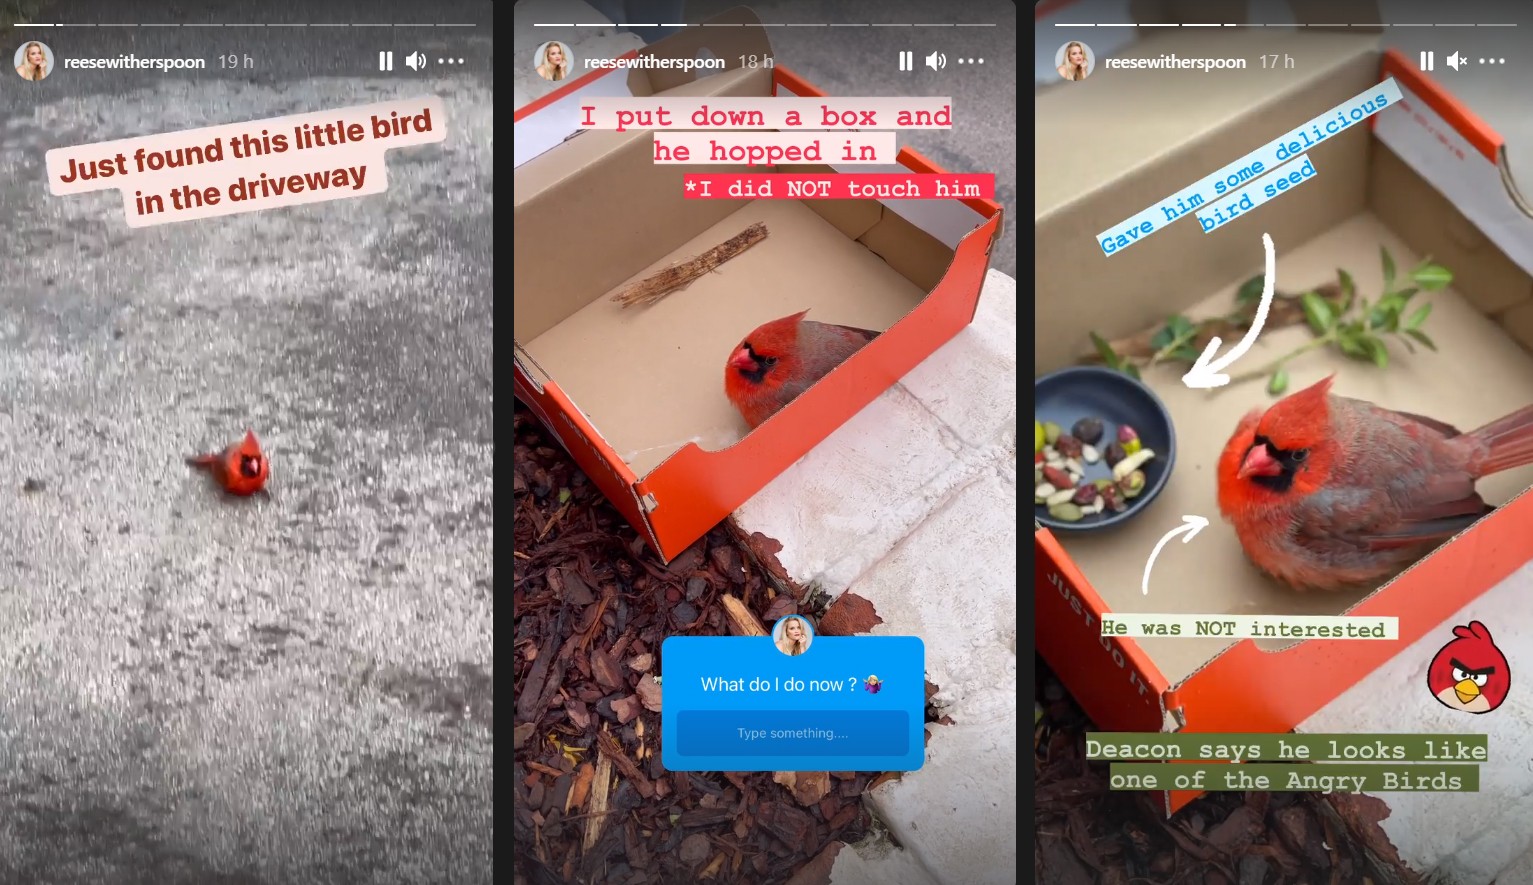 Sequência de publicações que Reese Witherspoon fez no Instagram sobre o cardeal que ela encontrou perto de sua casa (Foto: Reprodução / Instagram)